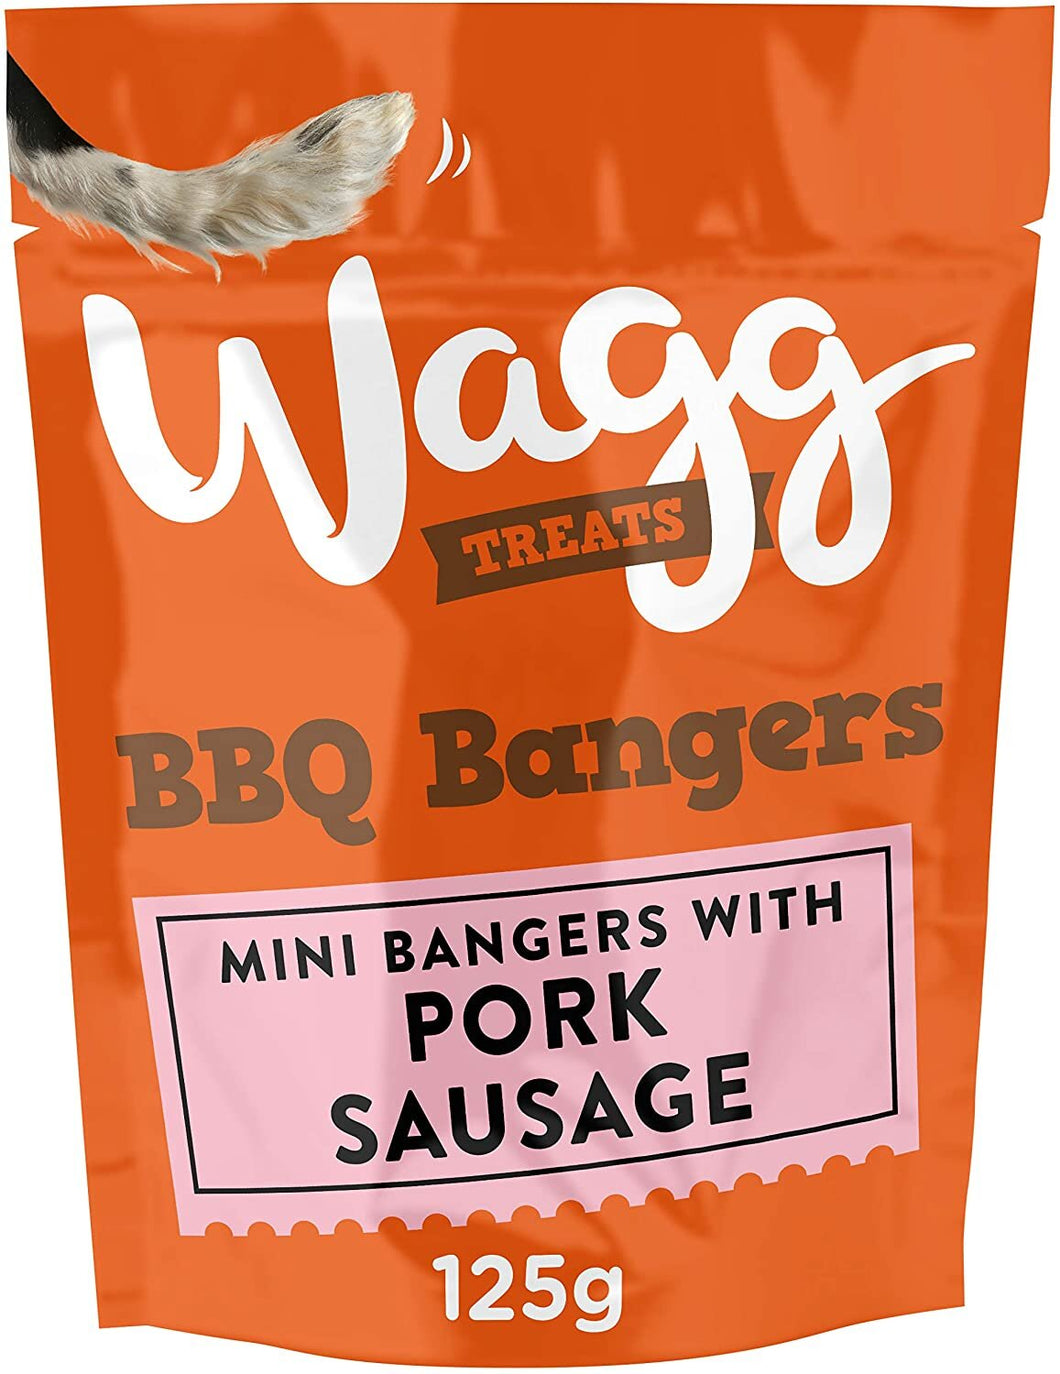 Wagg Treats BBQ Bangers 125g - Littlehampton Exotics 